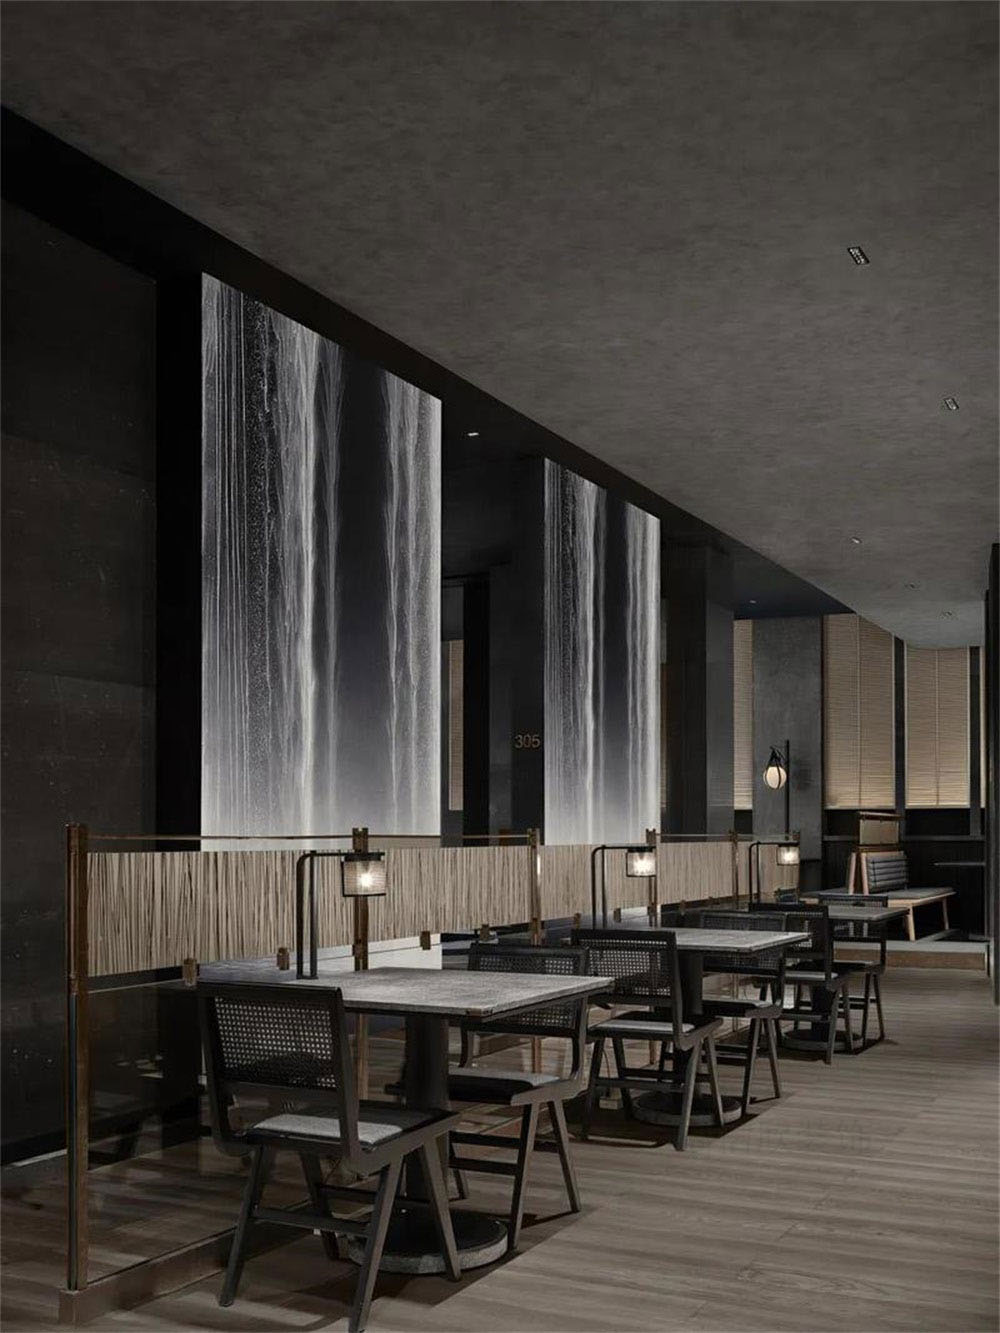 簡約風格日本料理鐵板燒餐廳裝修設計散座區